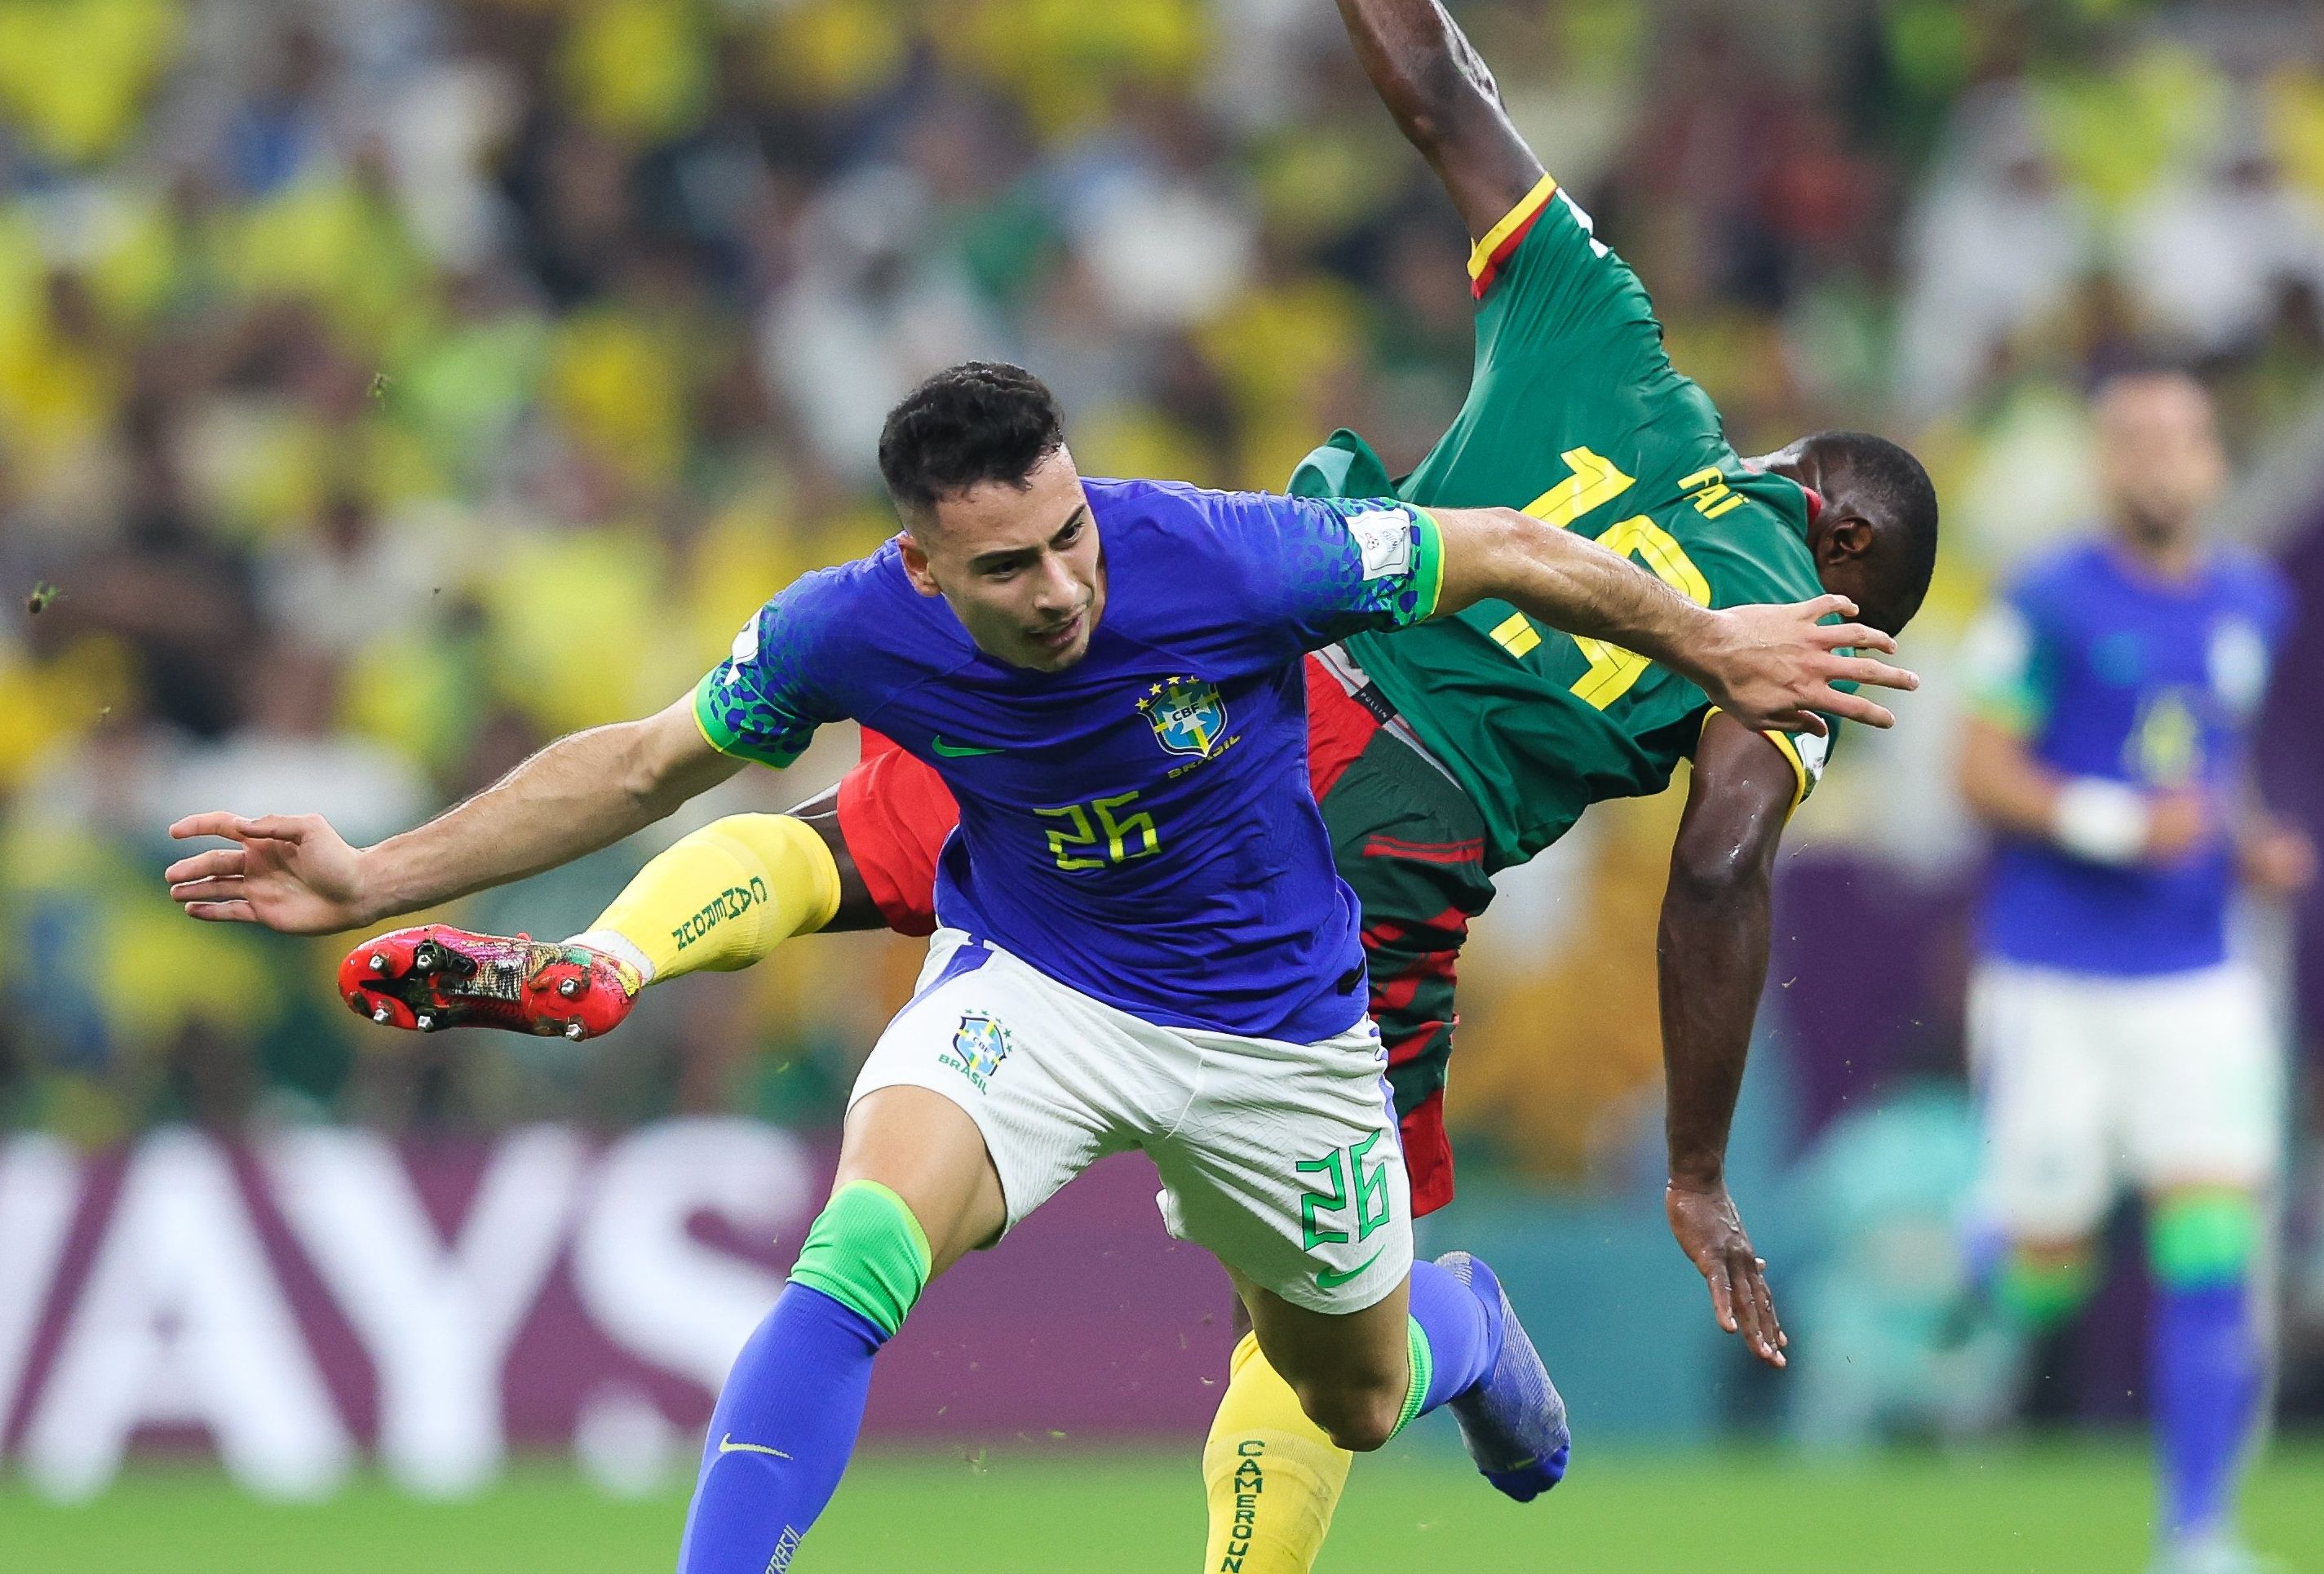 Бразилия и Камерун сыграли вничью